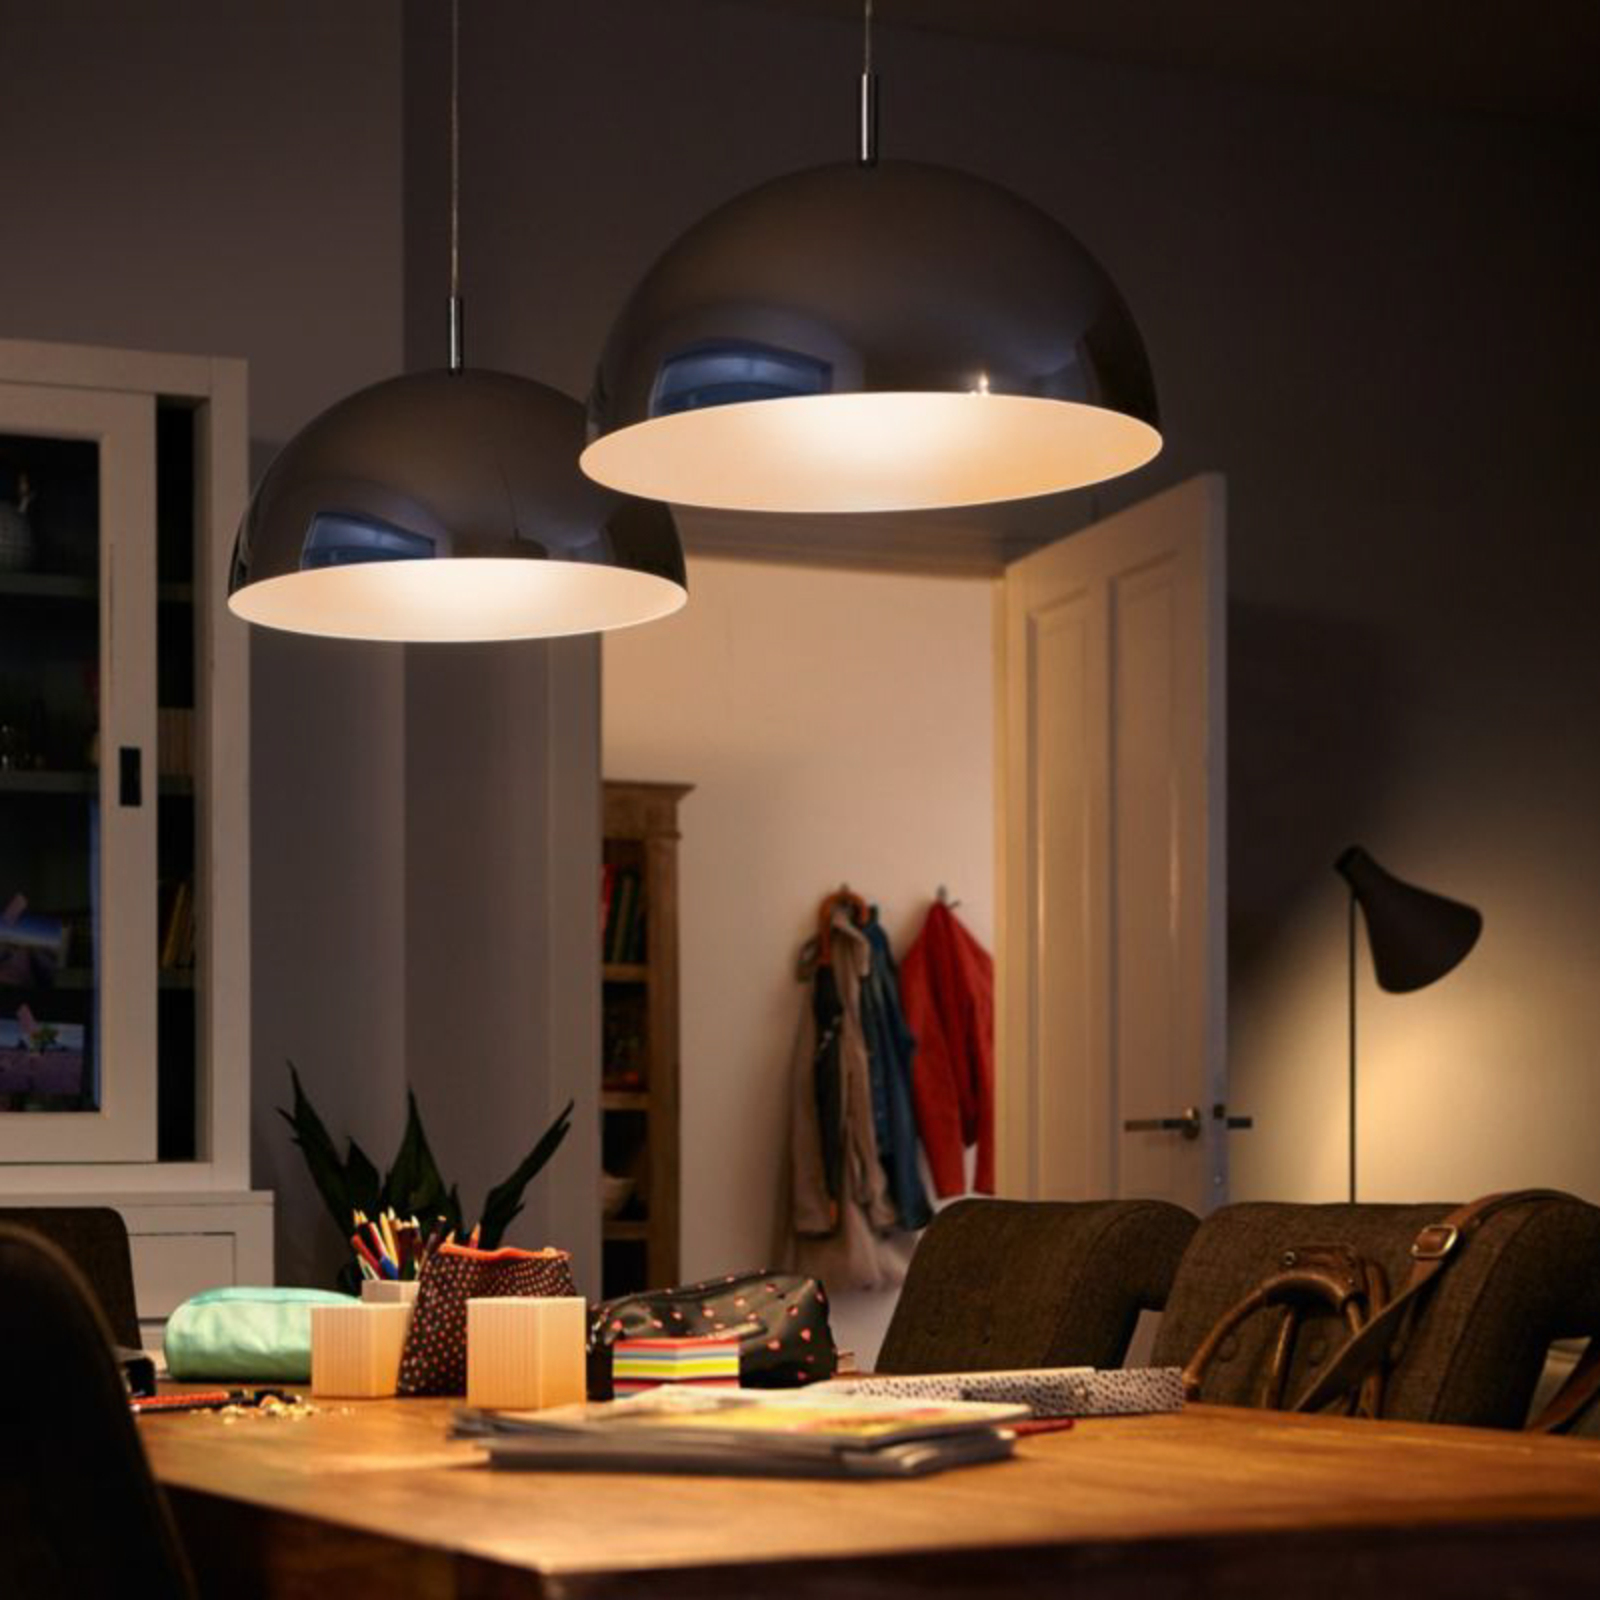 Philips LED-Lampe E27 4,9W 470lm 2.700K matt 3er